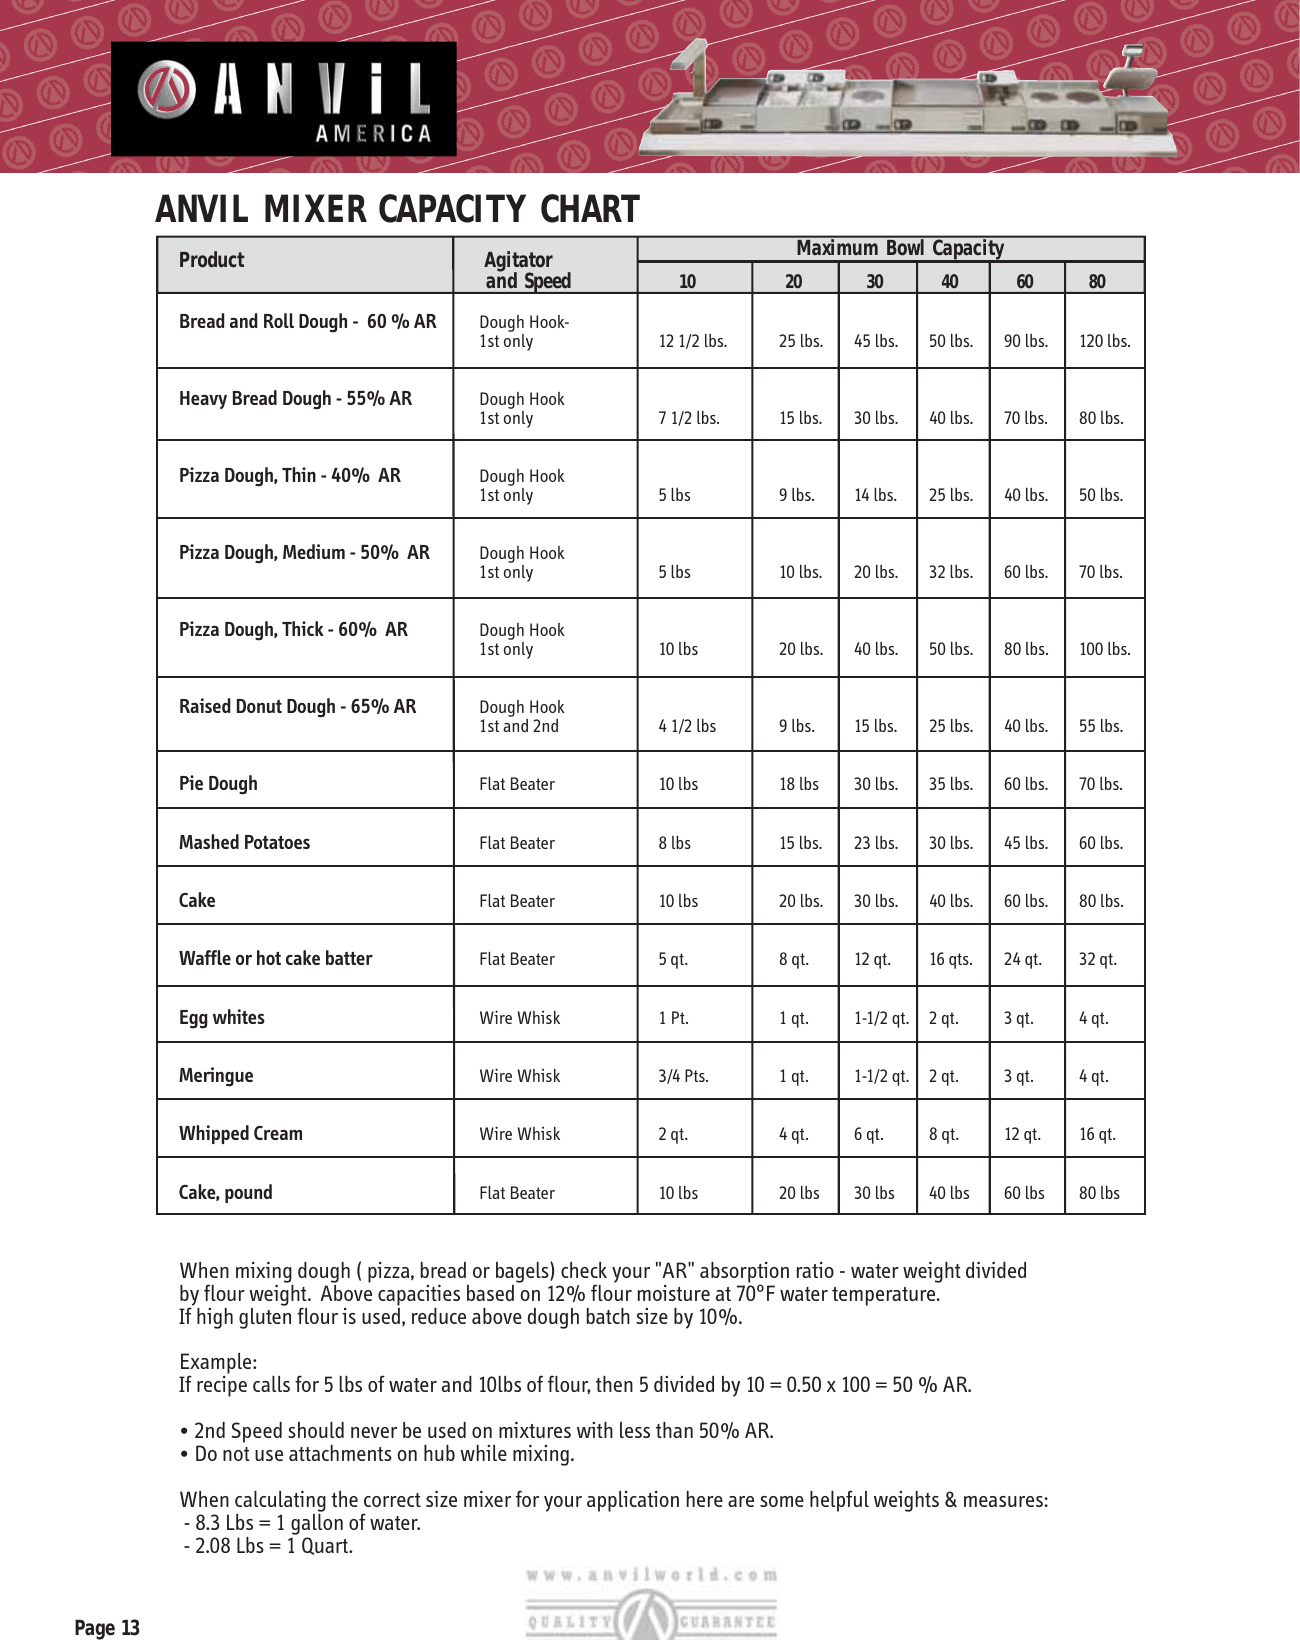 Page 1 of 1 - Mixer Capacity Chart